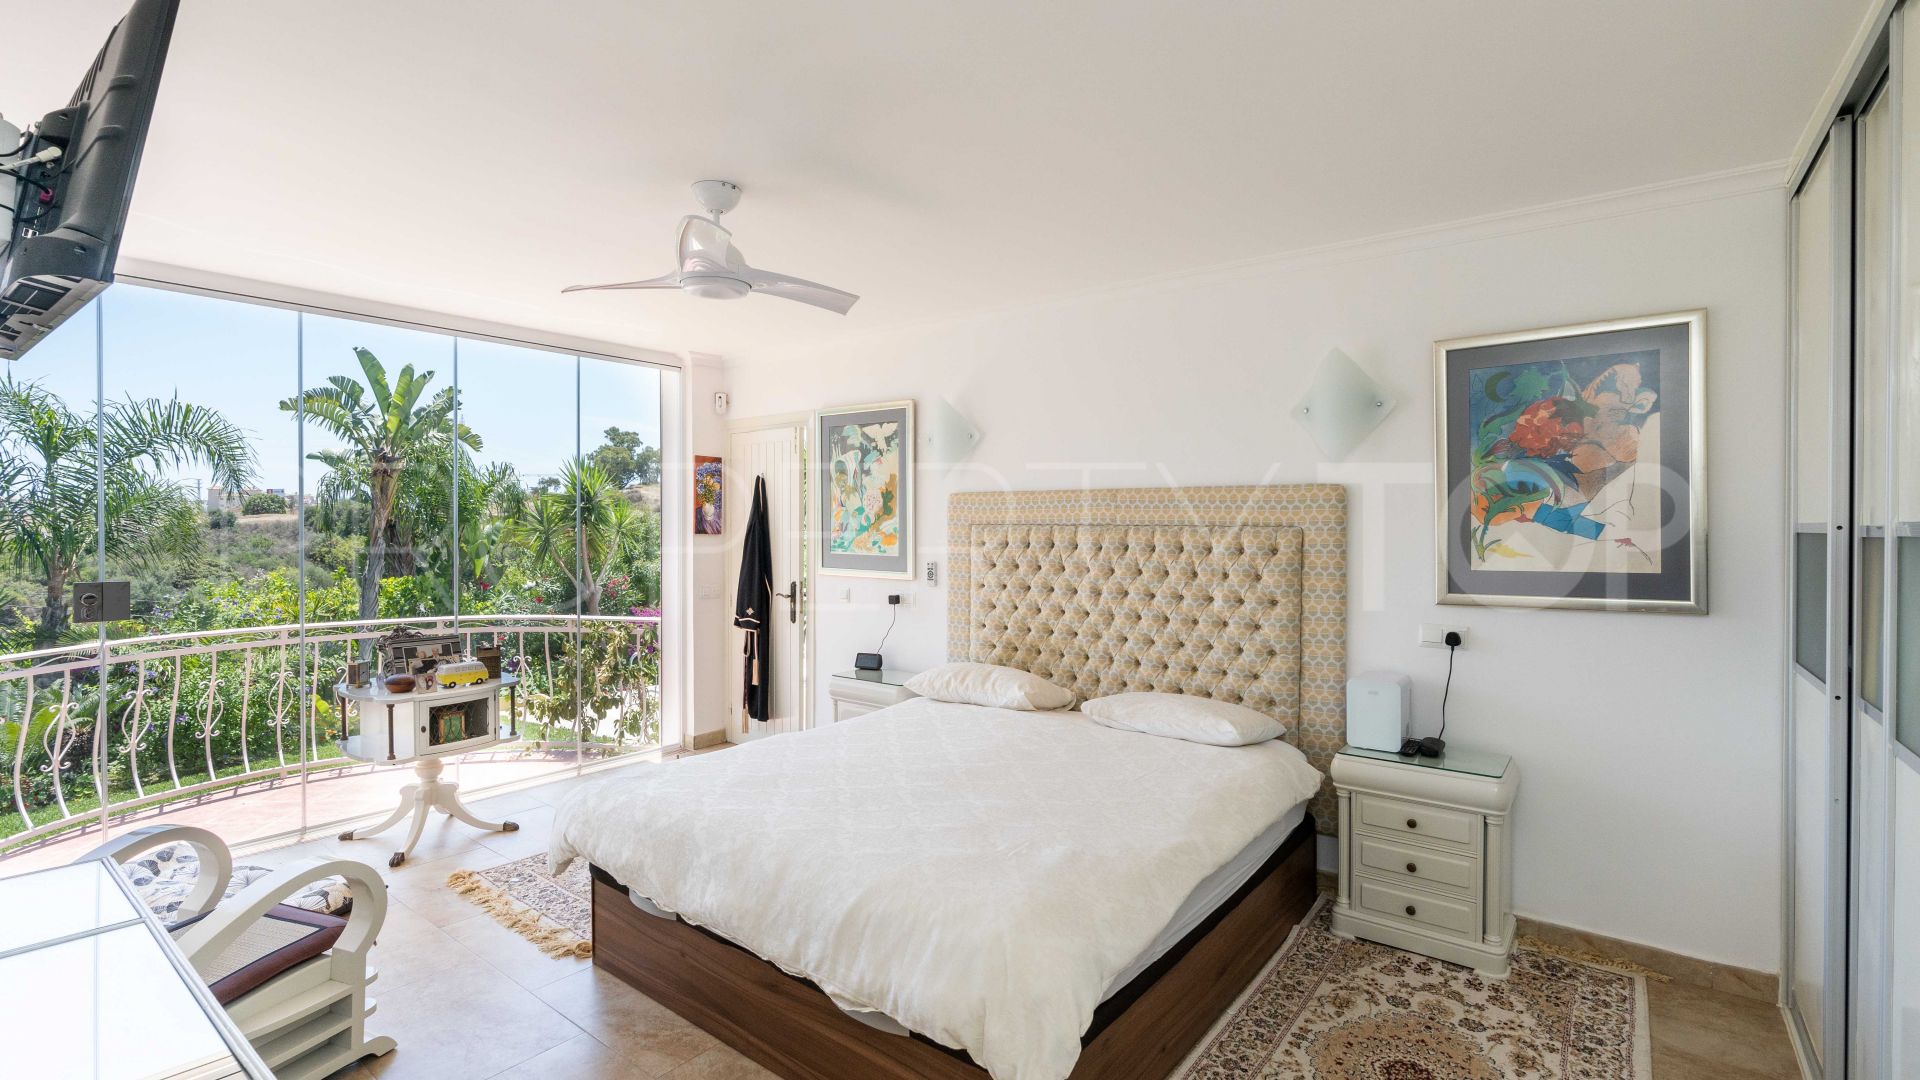 Buy 4 bedrooms villa in La Cala